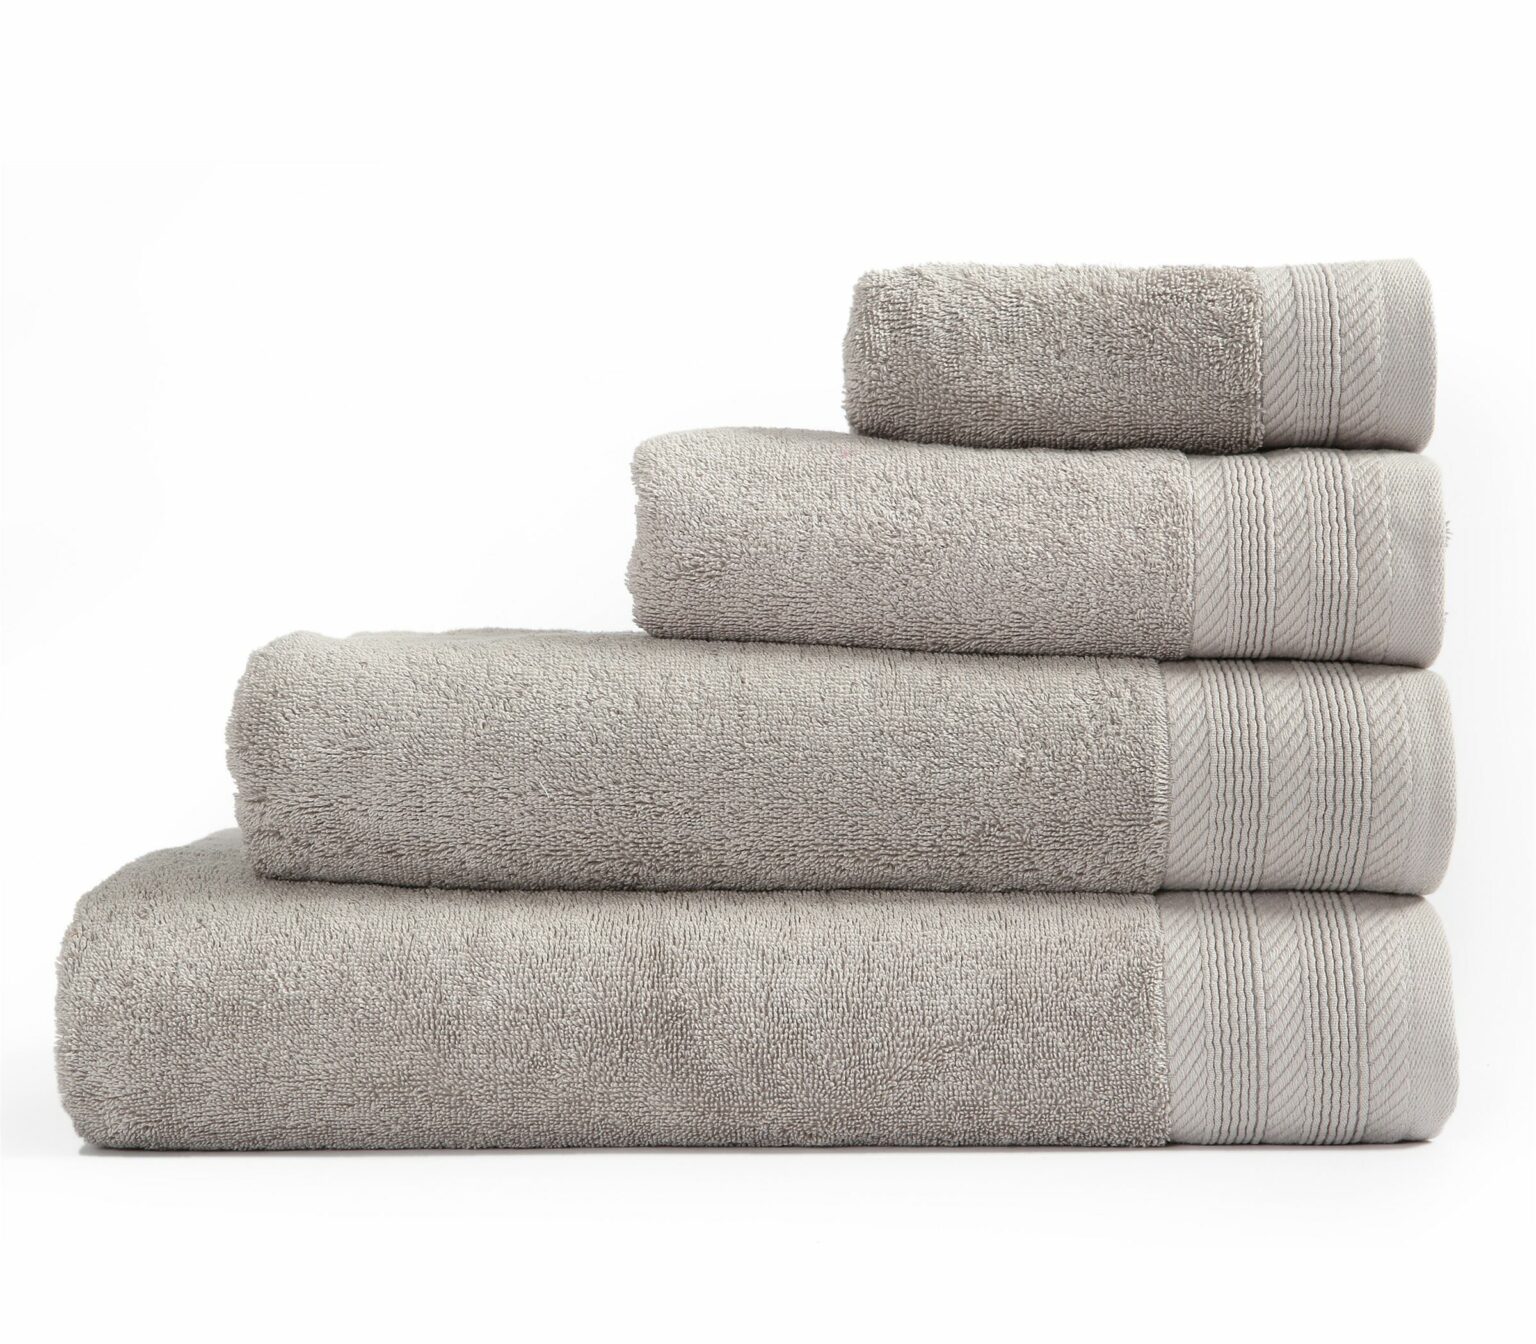 Grey Towels 1536x1344 